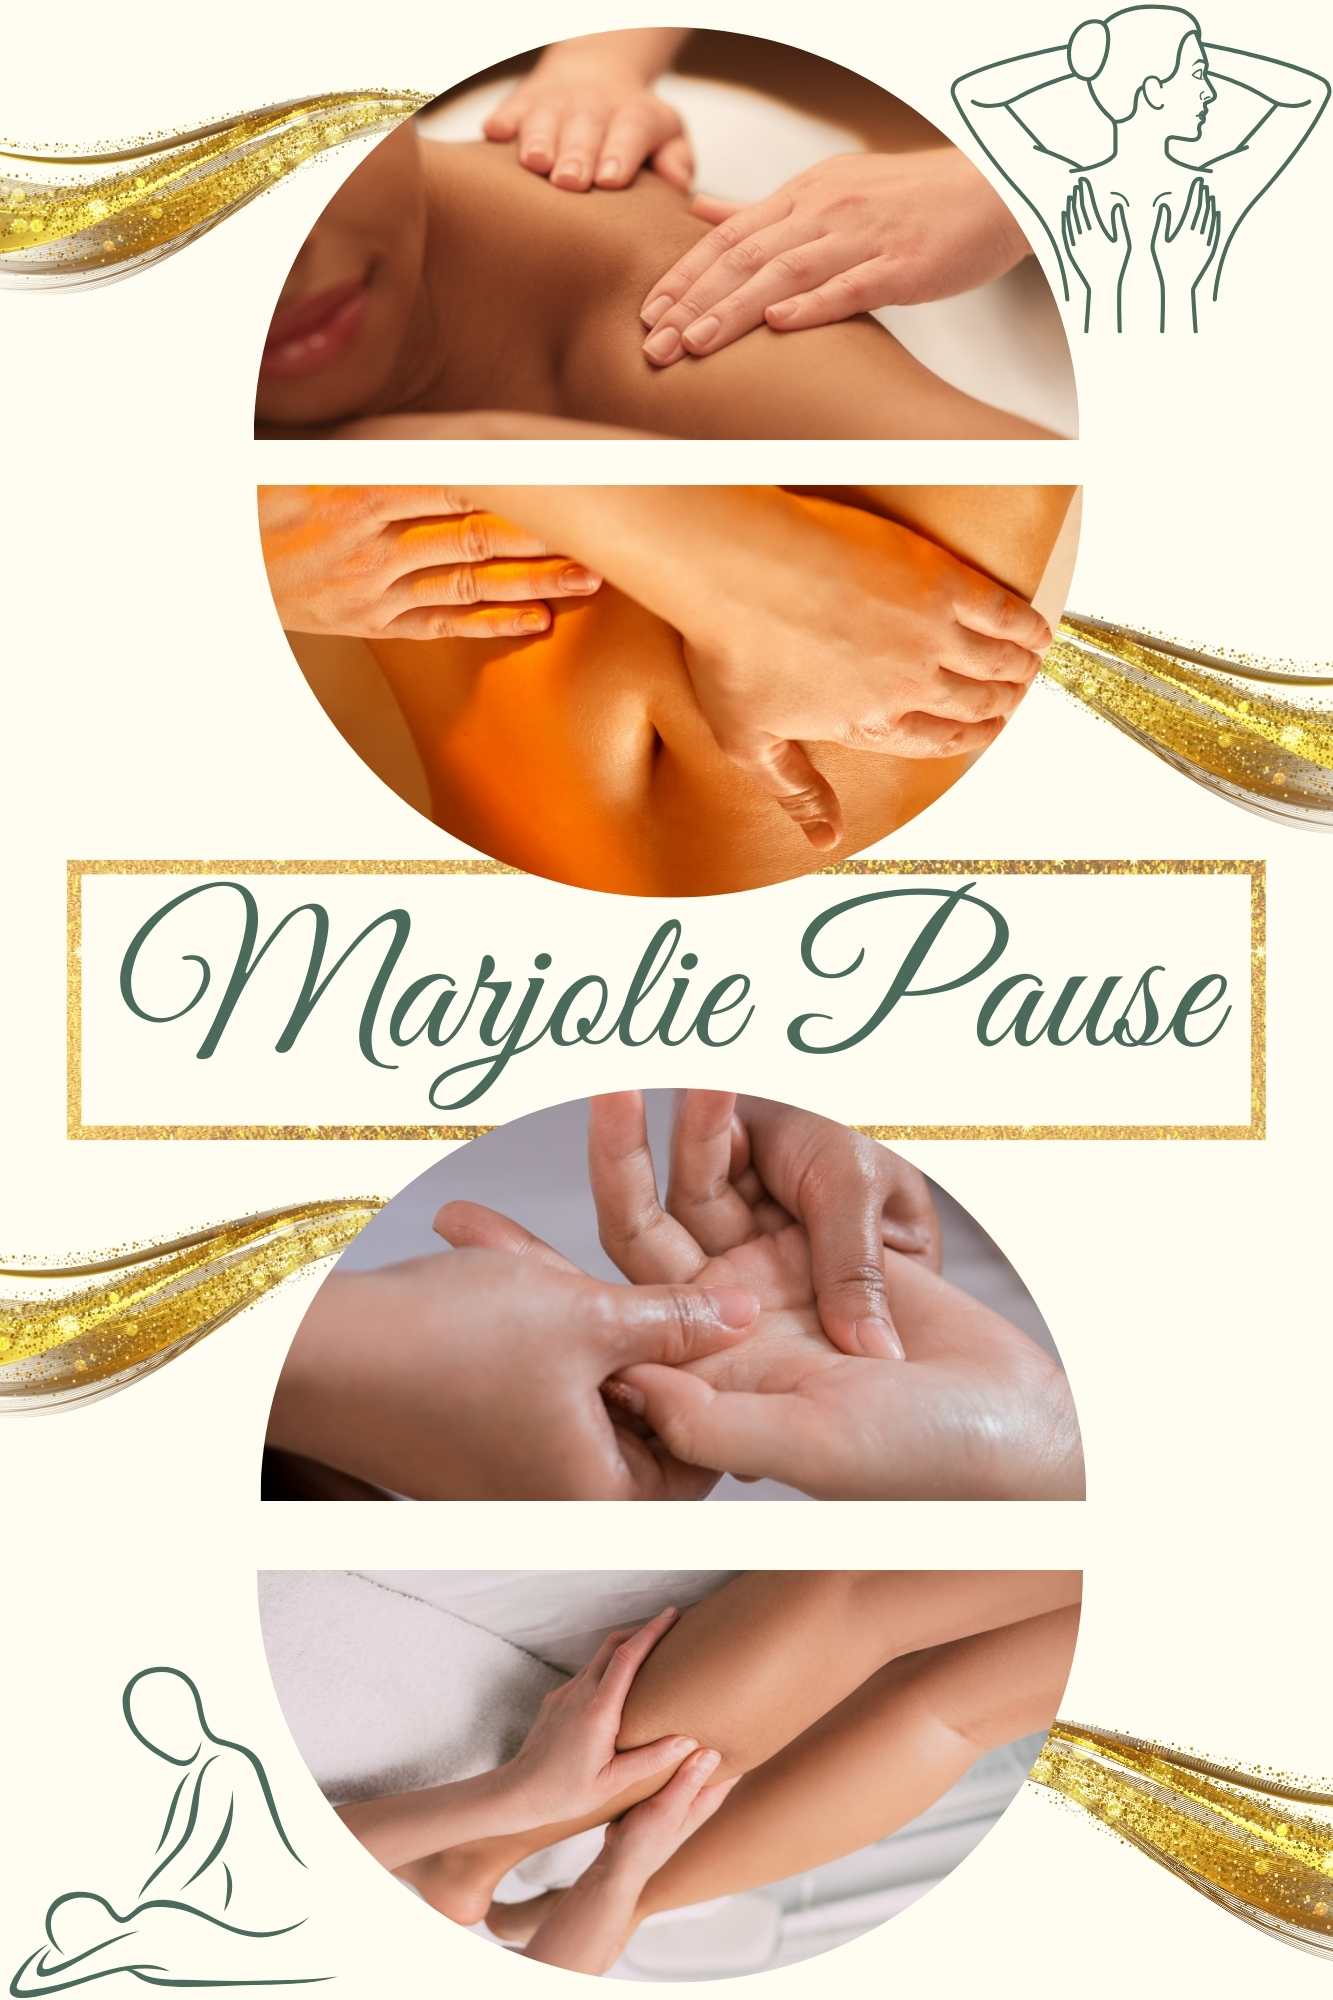 massage decontracturant pour reduire les douleurs musculaires avec marjolie pause